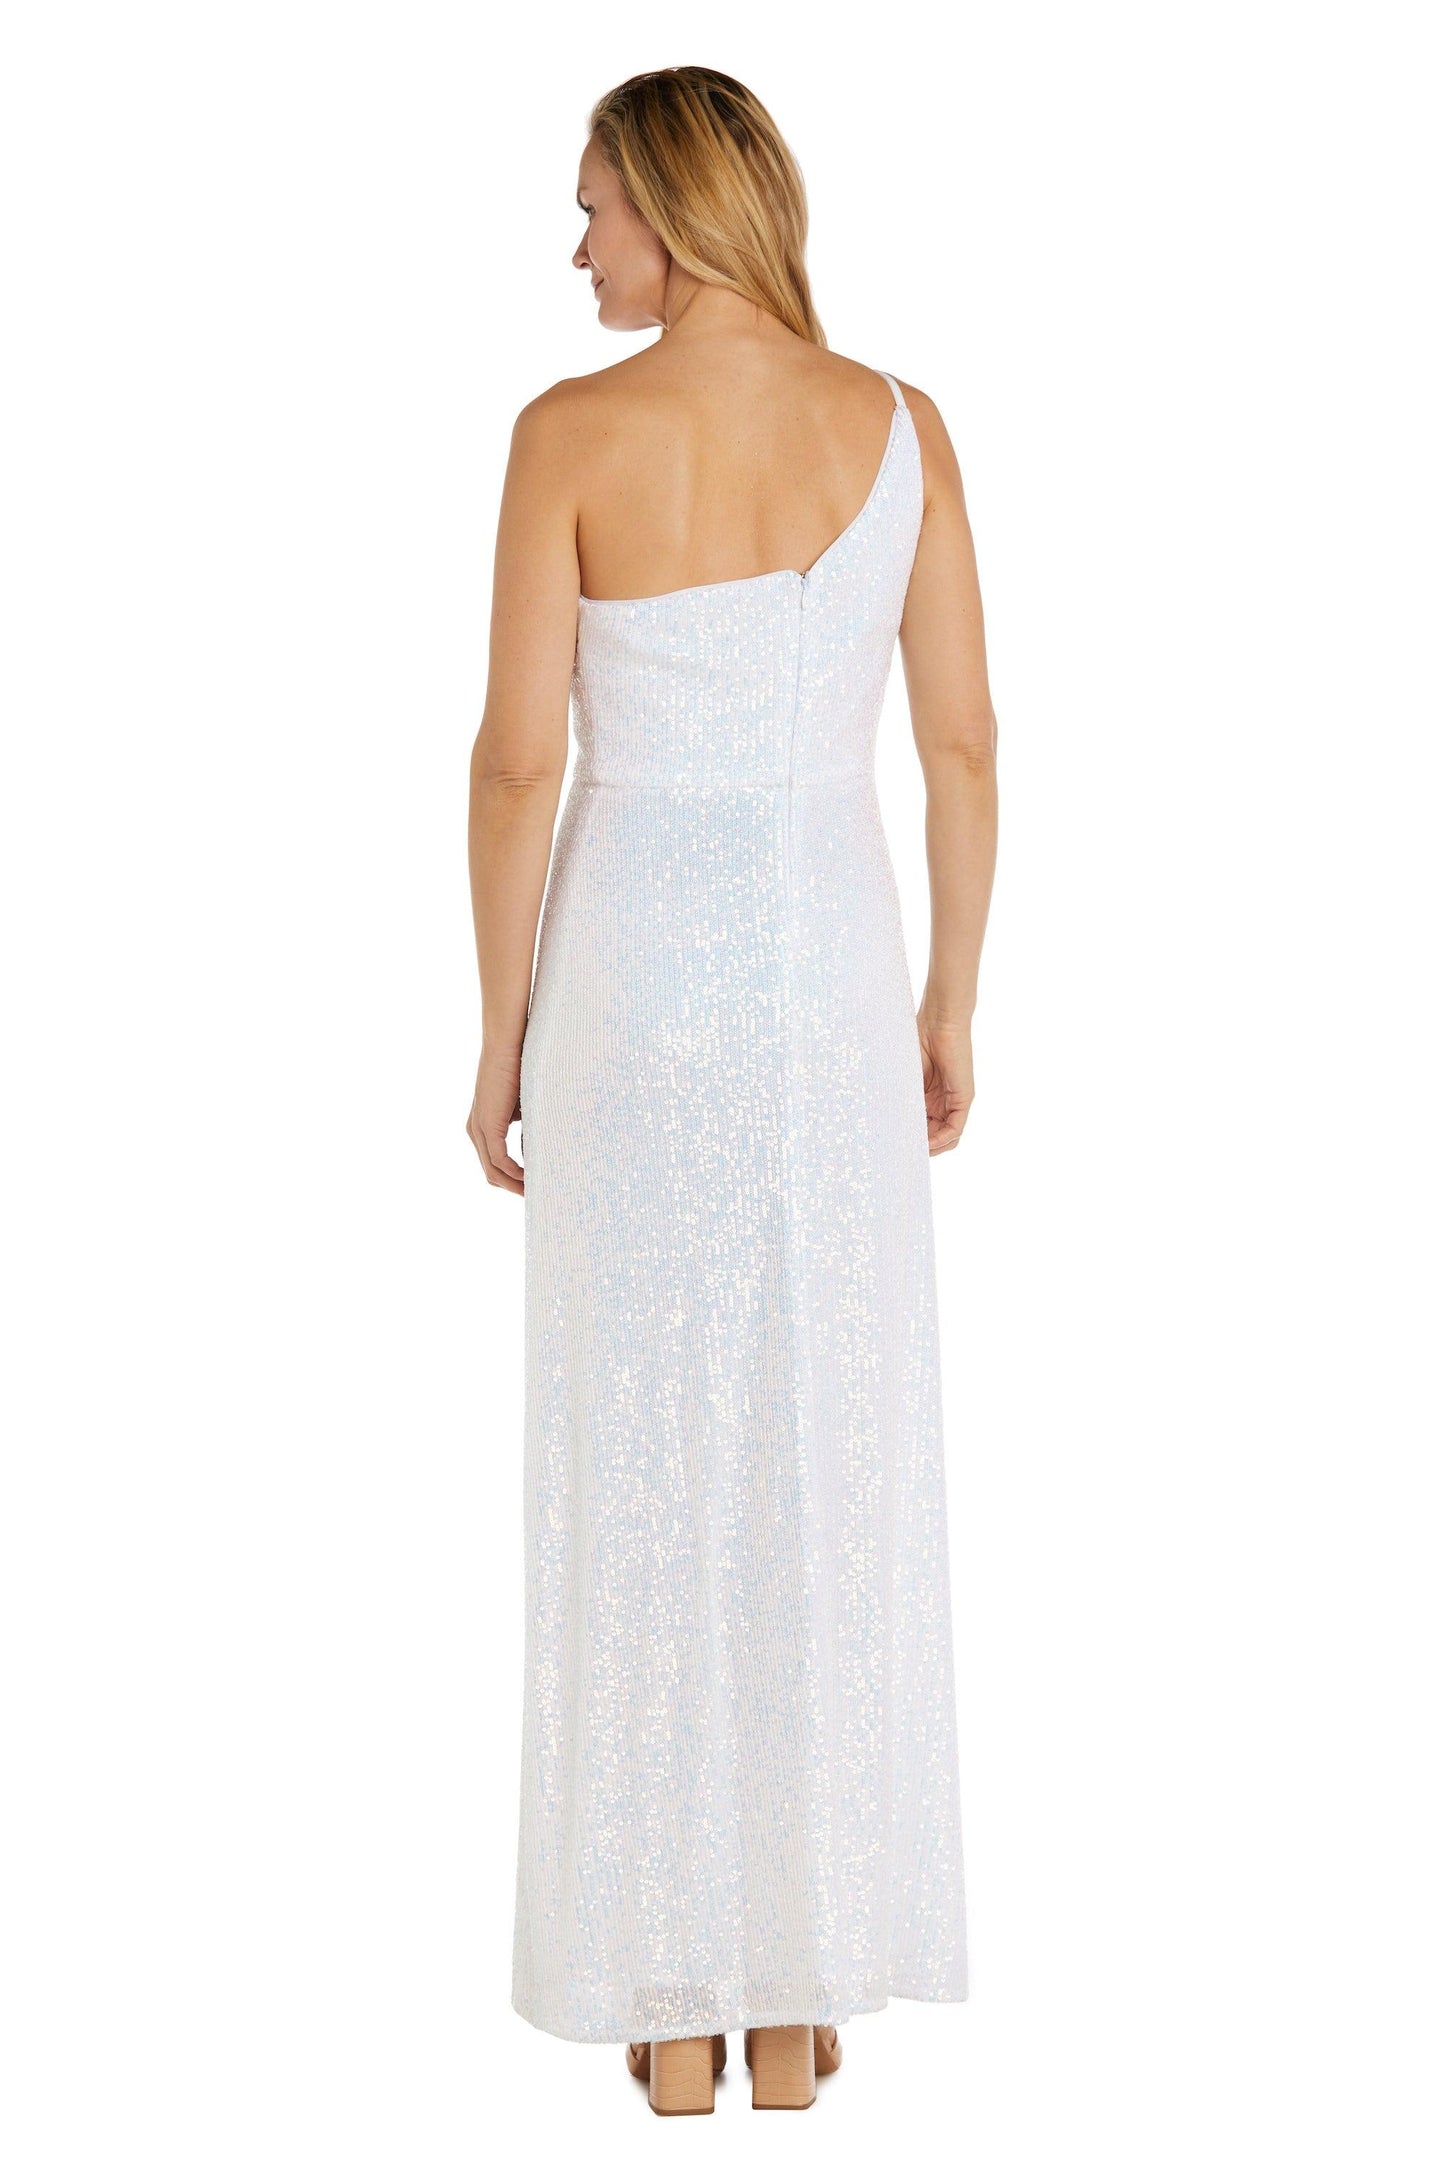 Nightway Long One Shoulder Formal Dress  22121 - The Dress Outlet